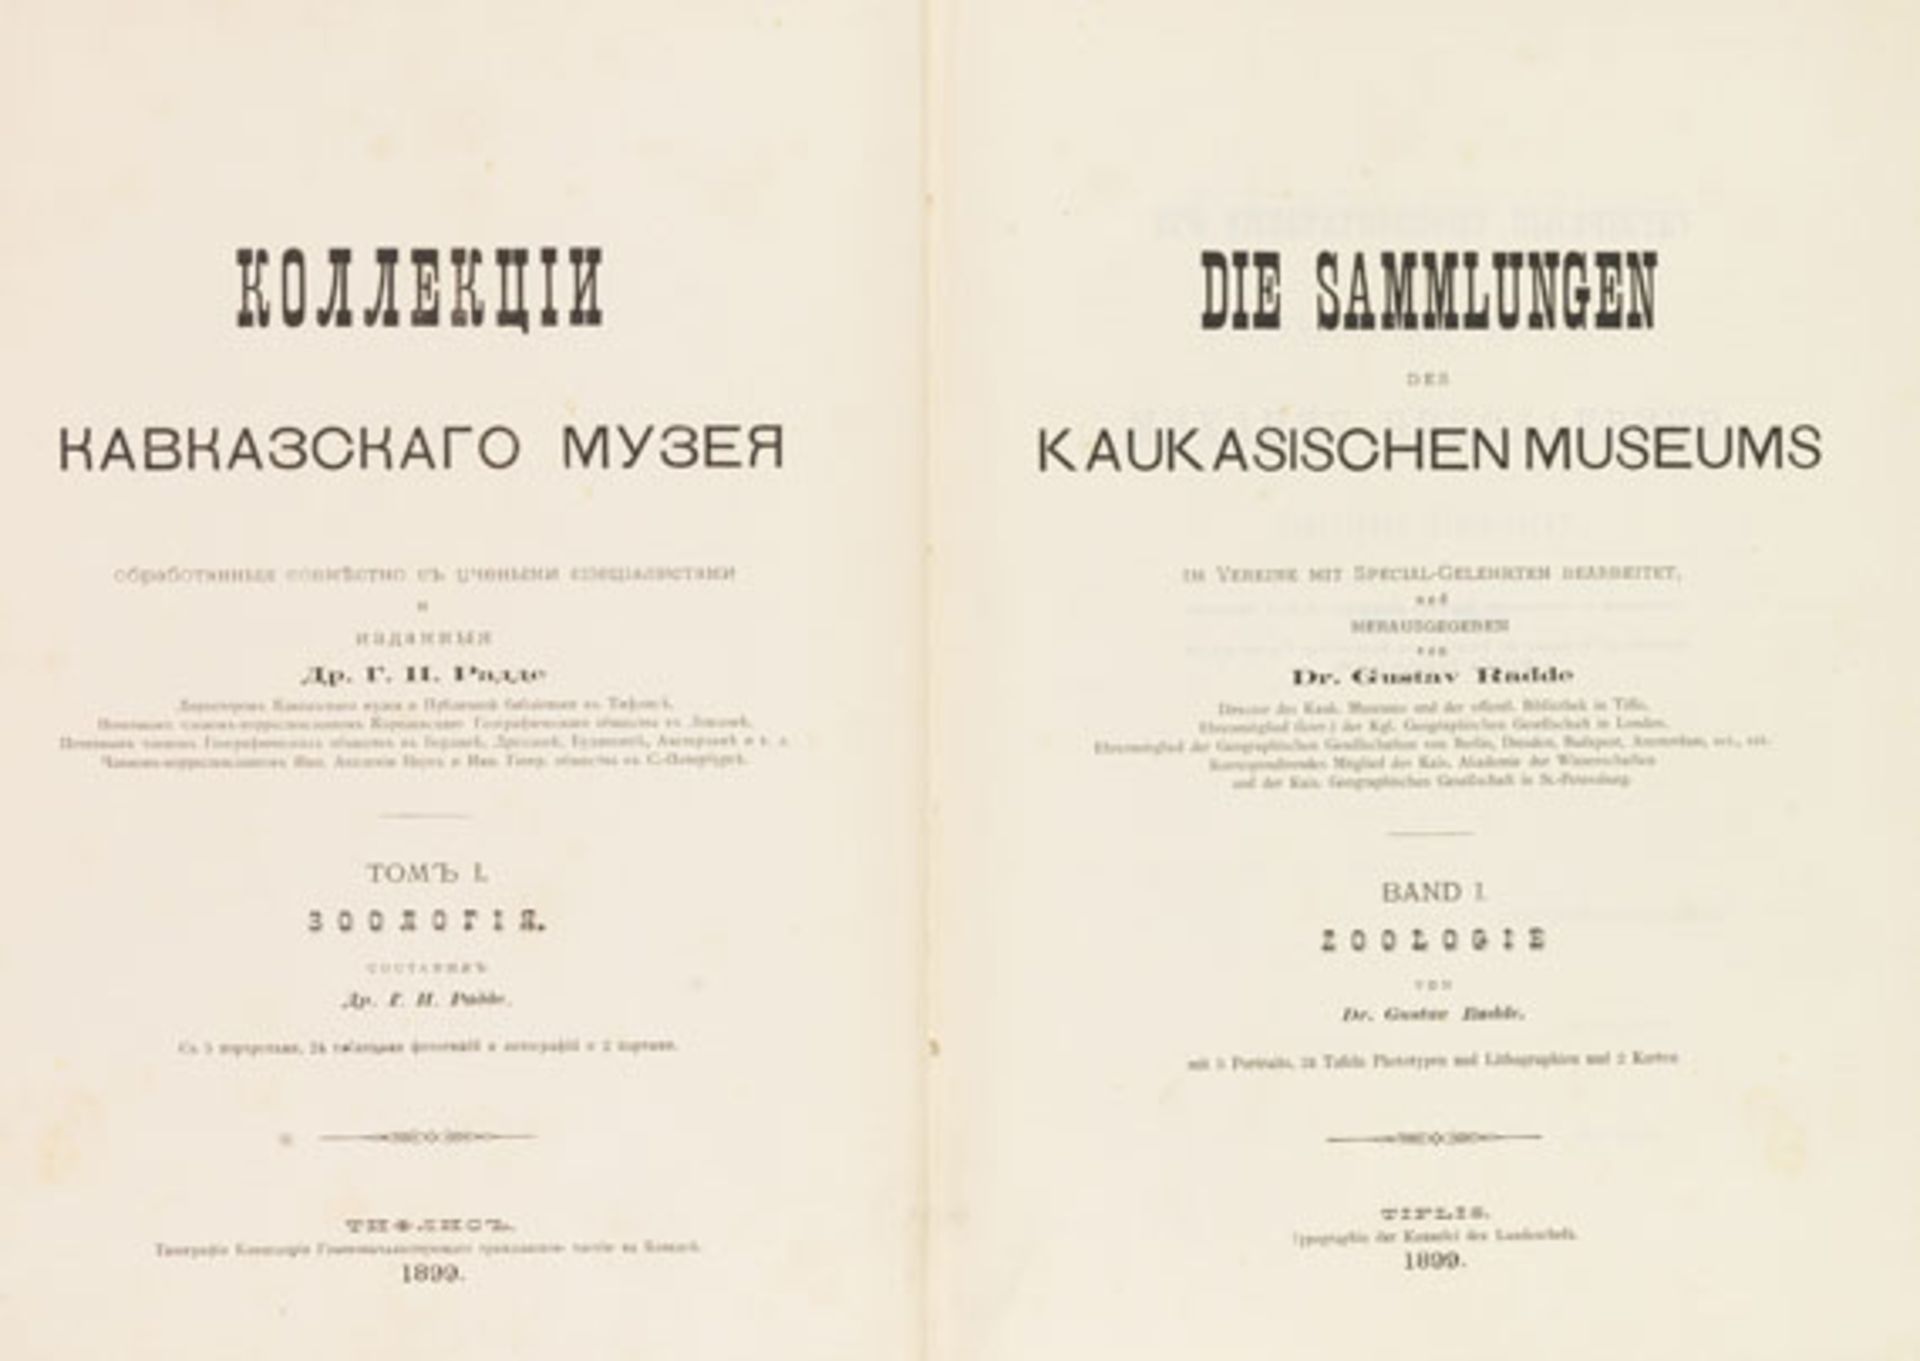 Gustav Radde - Die Sammlungen des Kaukasischen Museums. Band I: